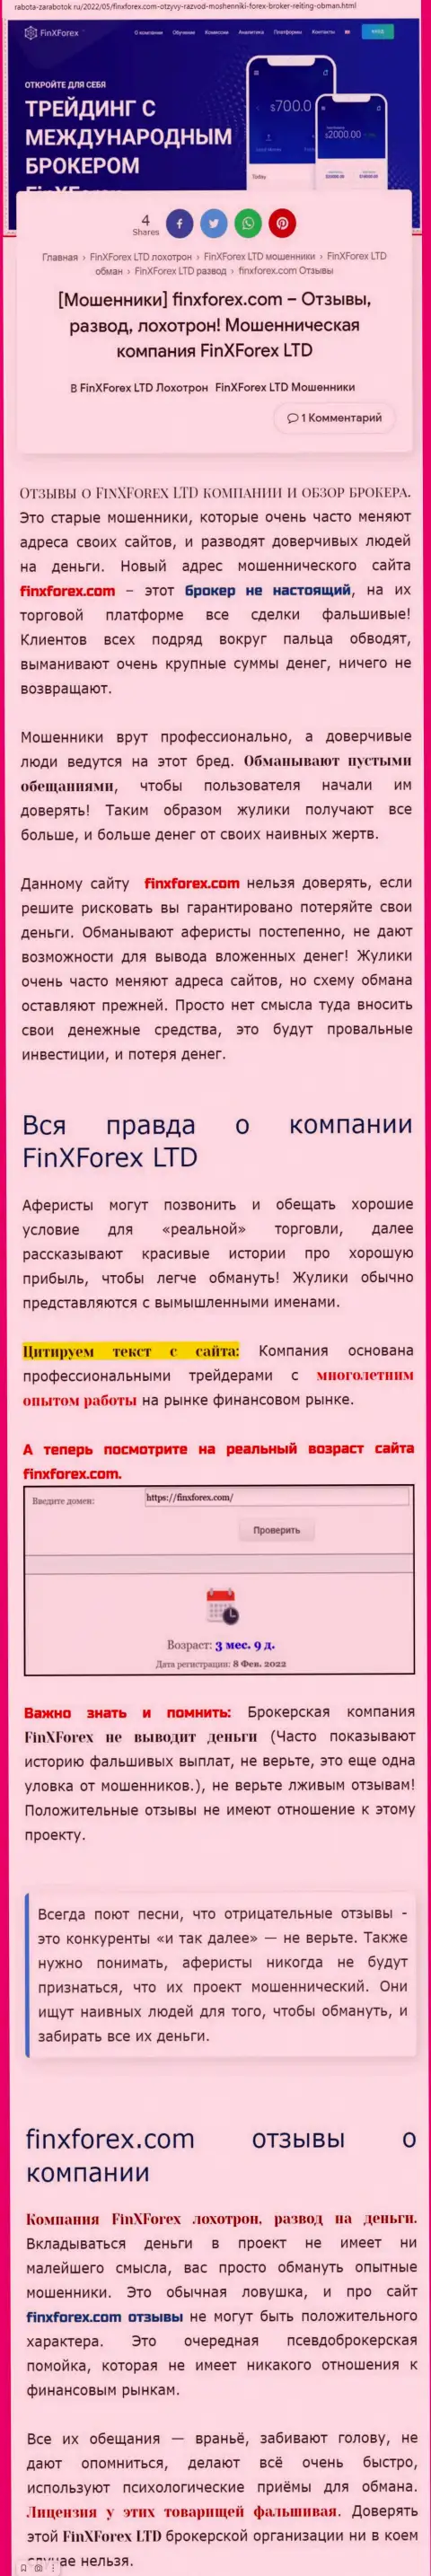 Автор публикации об ФинИкс Форекс утверждает, что в организации ФинХФорекс обманывают